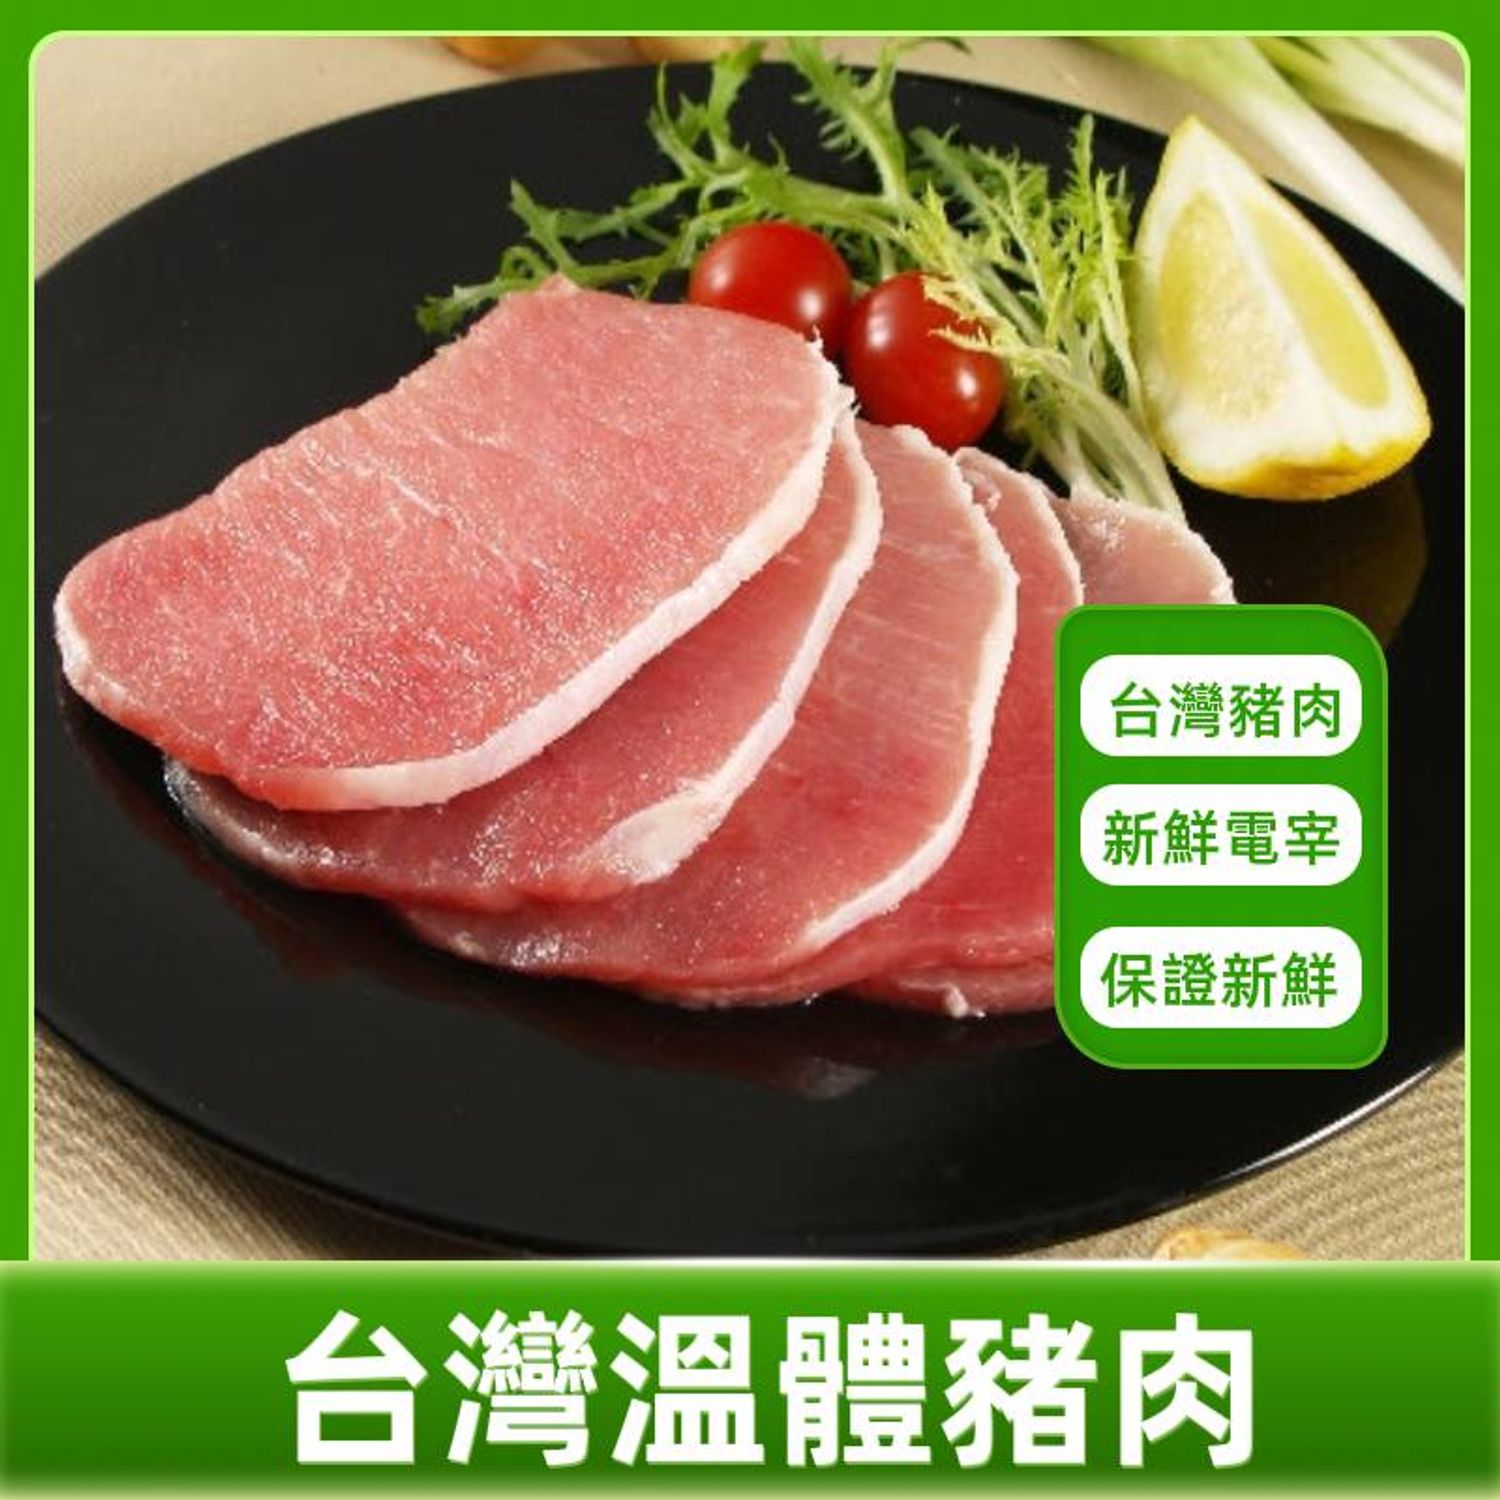 享食購生鮮宅配 - 台灣生鮮豬肉系列